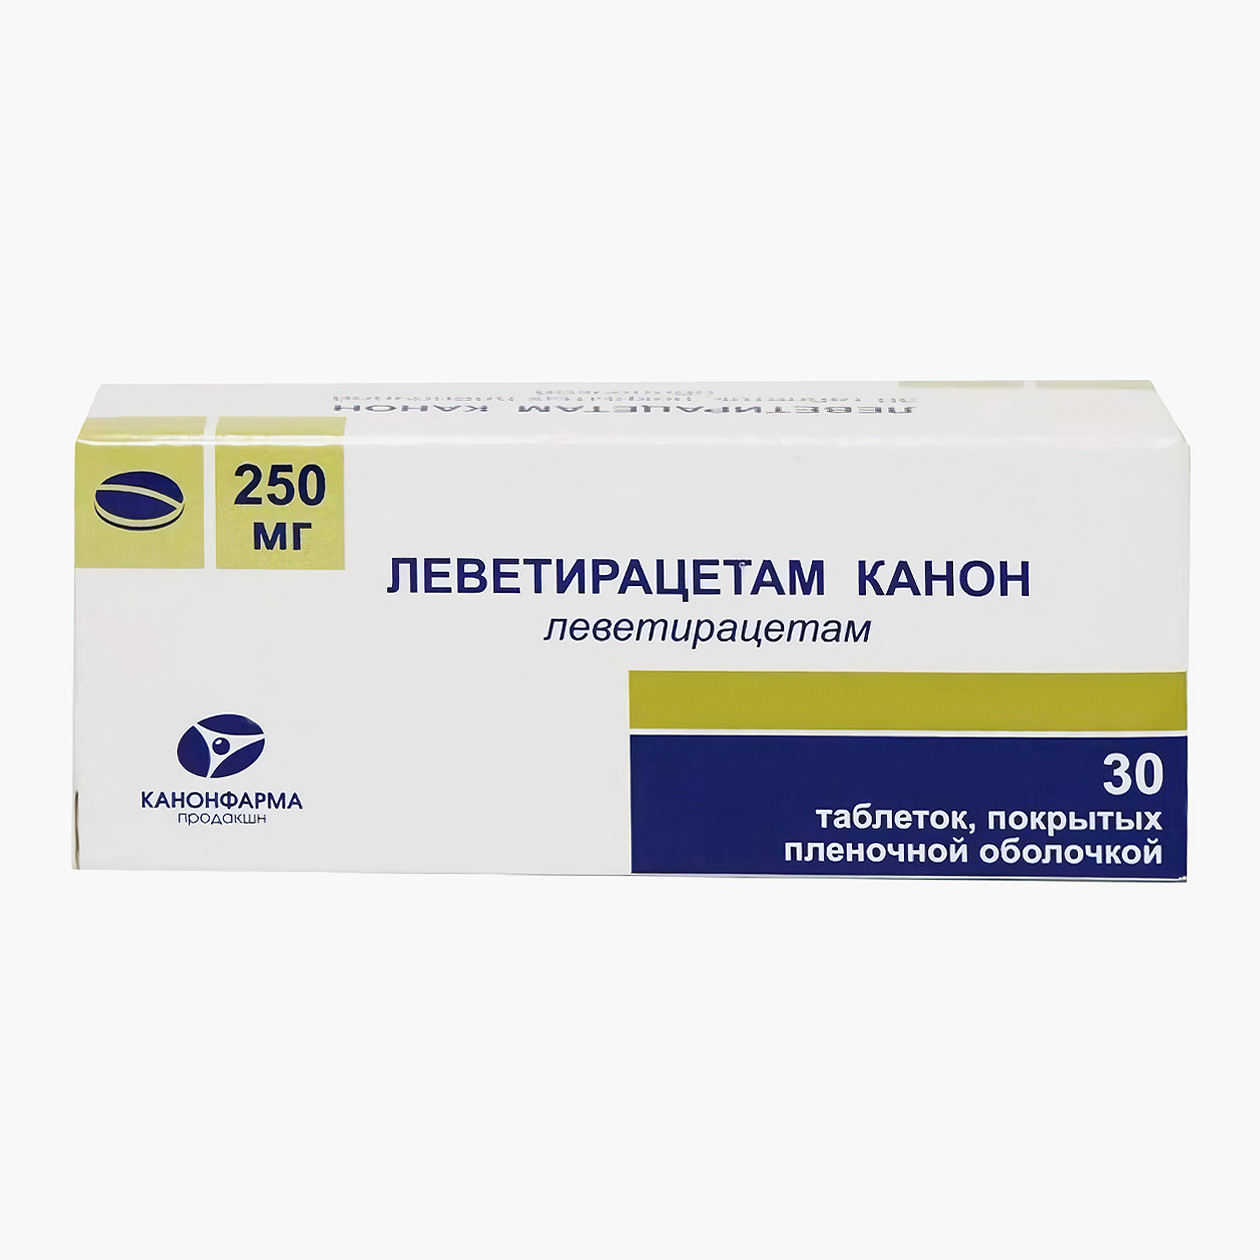 Цена упаковки из 30 таблеток в минимальной дозировке 250 мг начинается с 325 ₽. Источник: asna.ru